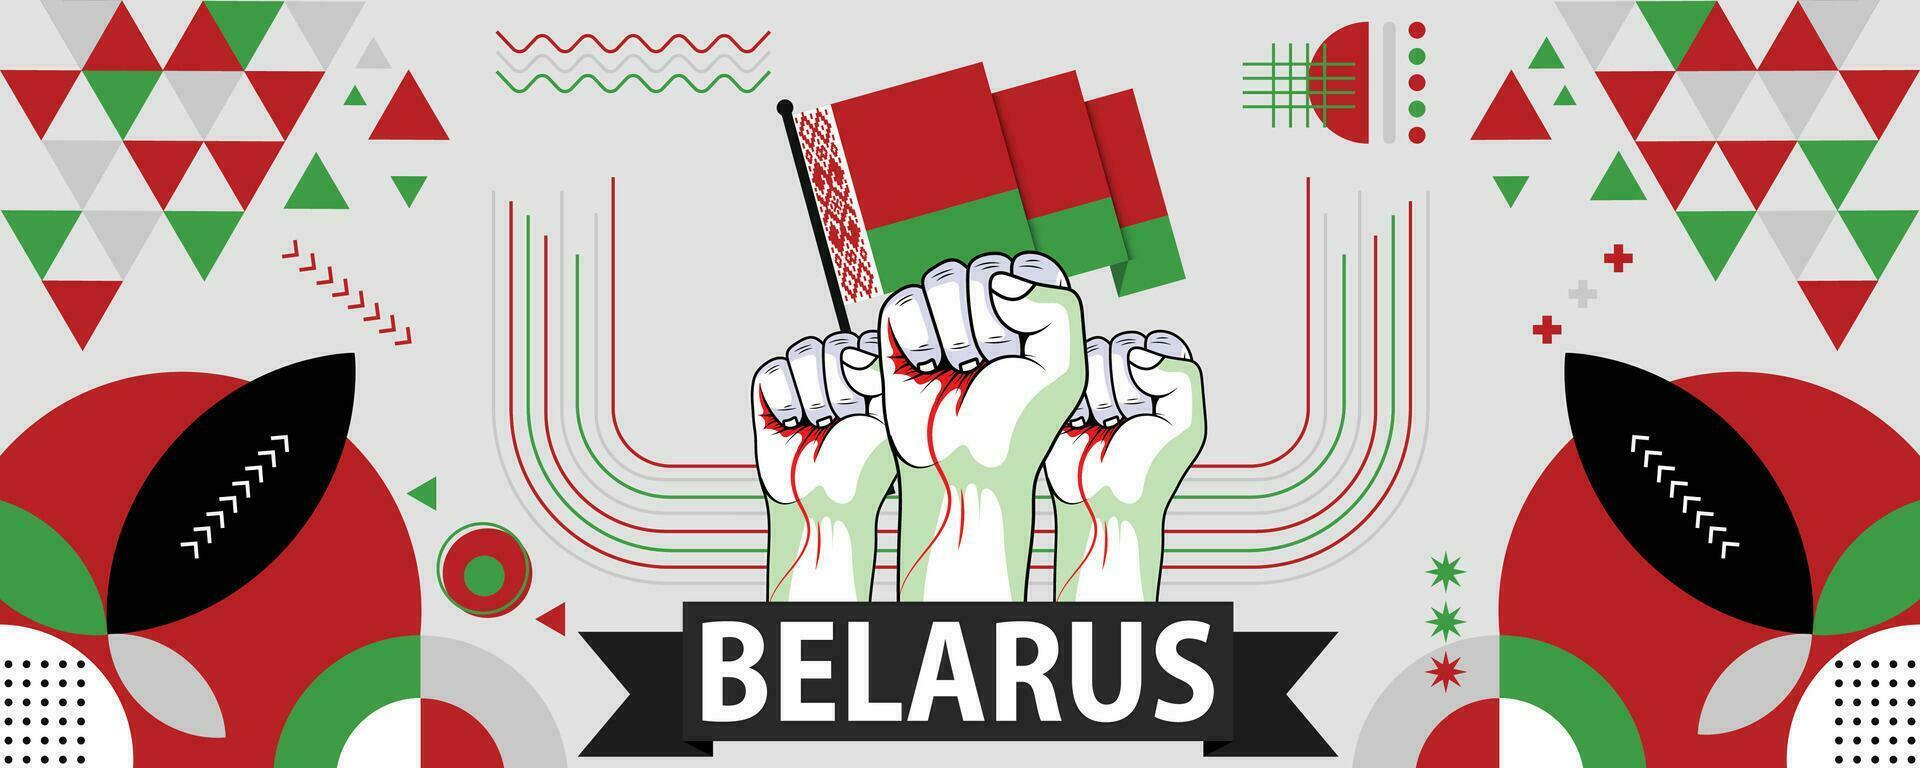 bielorrusia nacional o independencia día bandera para país celebracion. bandera de bielorrusia con elevado puños moderno retro diseño con tiporgafia resumen geométrico iconos vector ilustración.